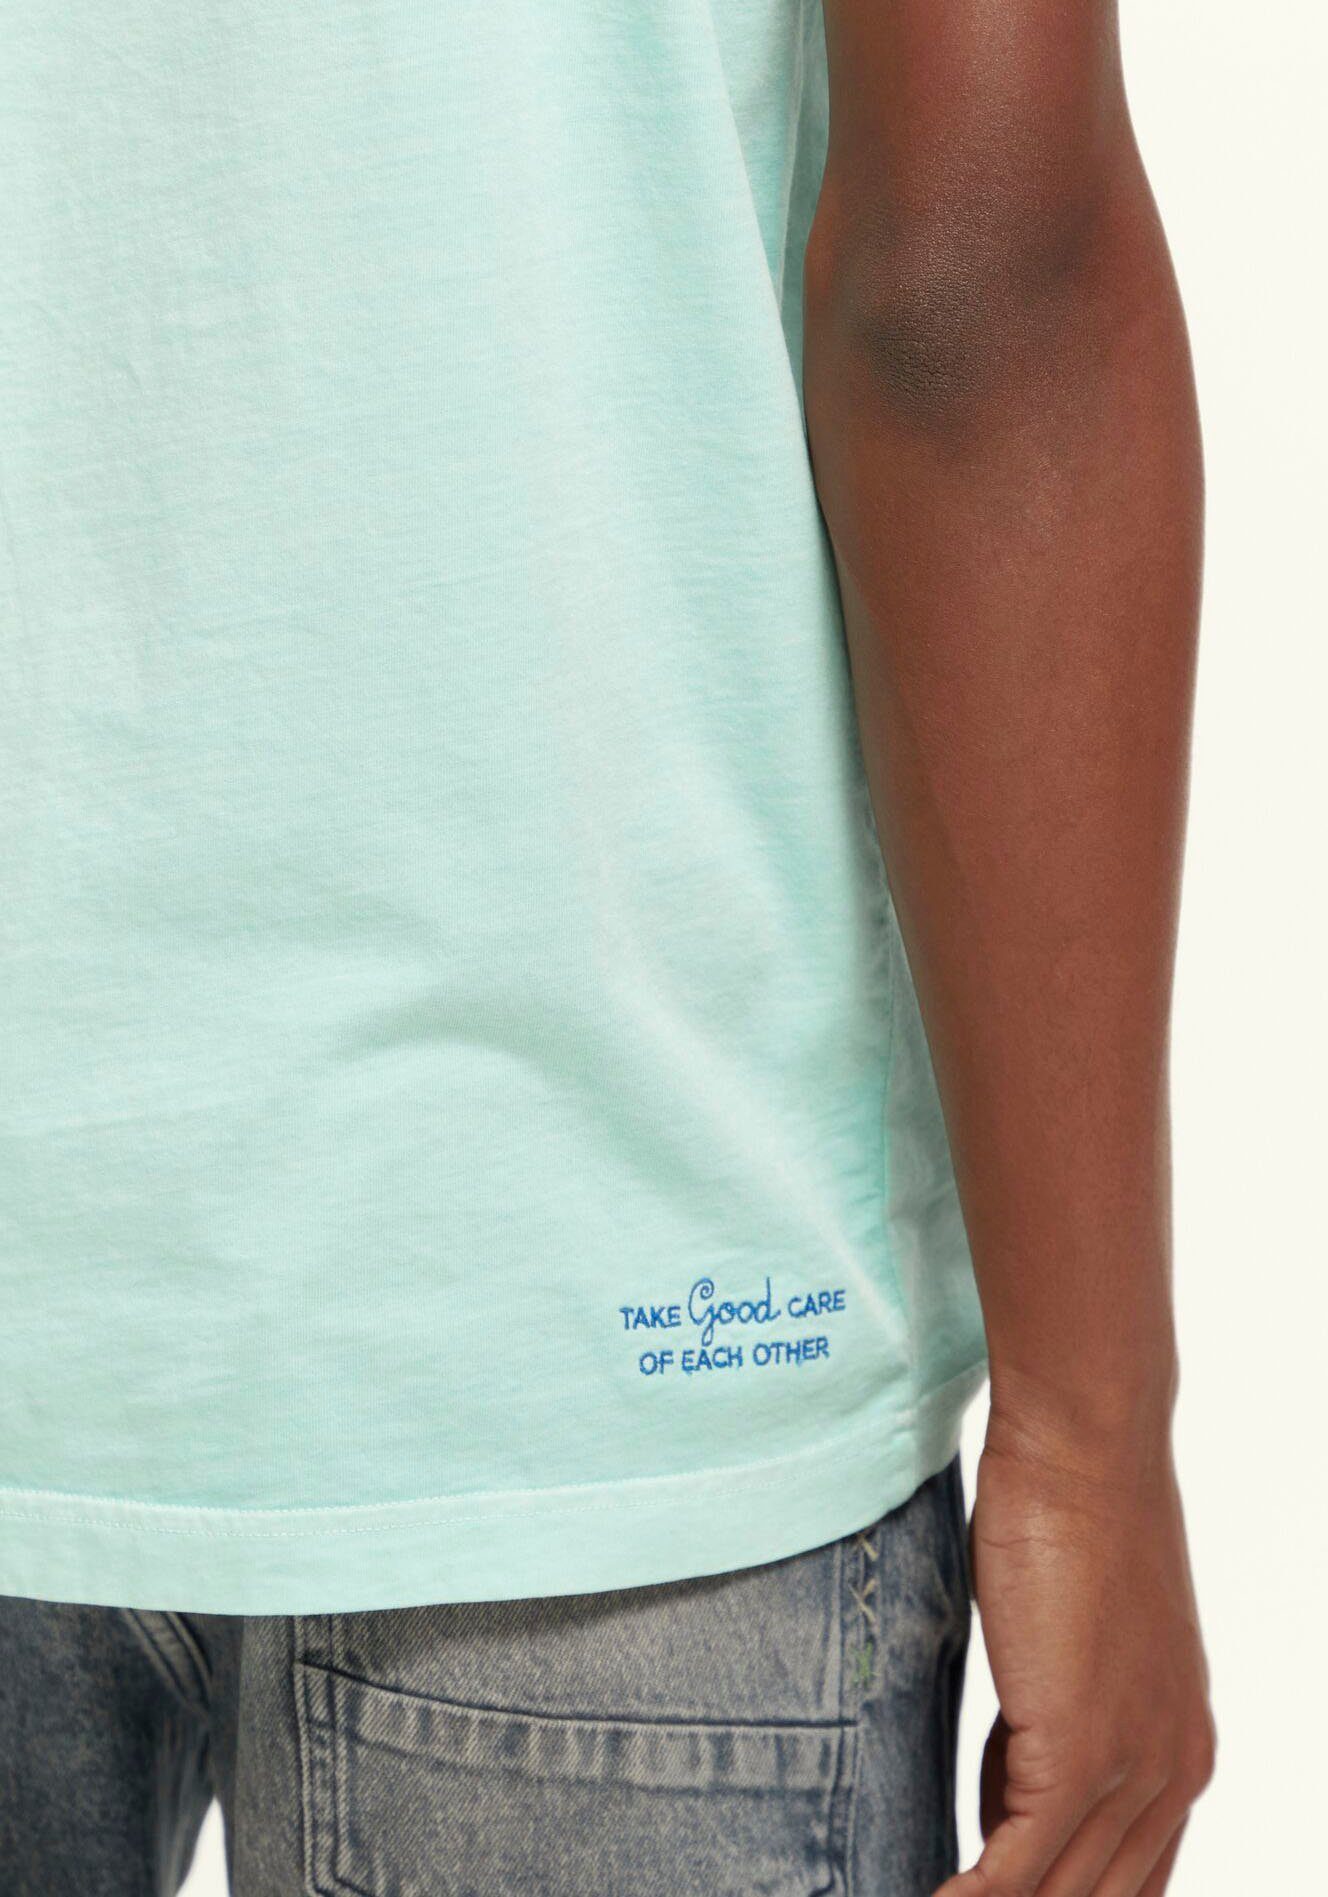 der Bay Soda Garment-dye Rundhalsshirt kleiner logo Logo-Stickerei T-shirt & auf Scotch mit regular-fit Brust